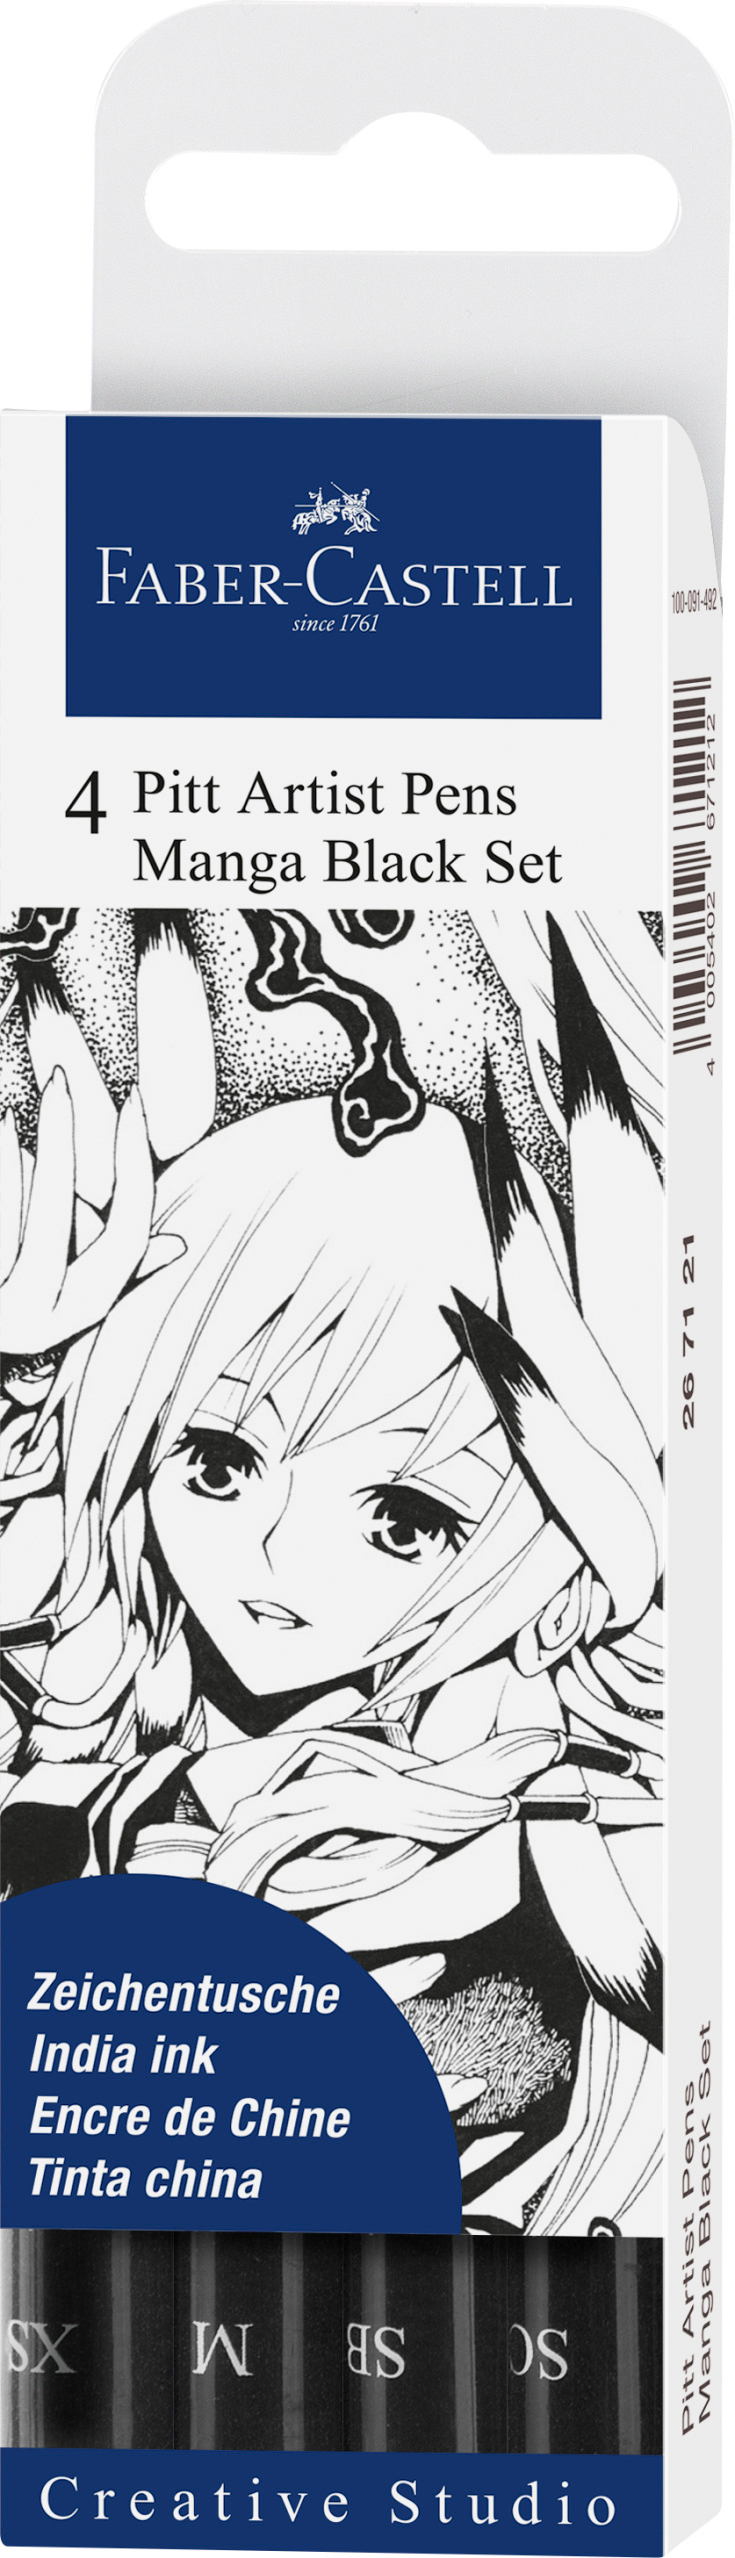 FABER-CASTELL Pitt Artist Pen Manga 267121 noir 4 pcs.